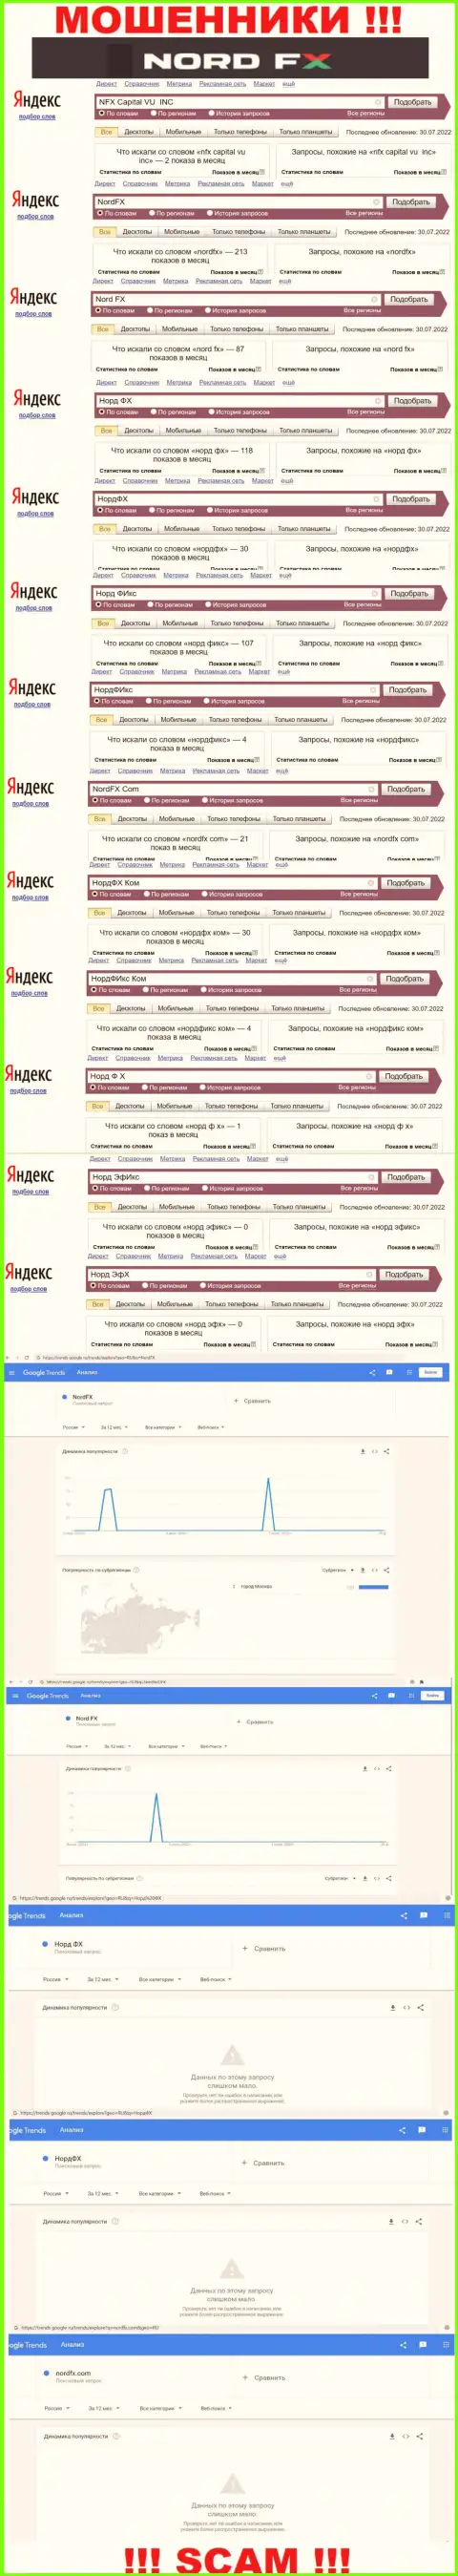 Количество запросов в поисковиках всемирной сети internet по бренду обманщиков НордФИкс Ком